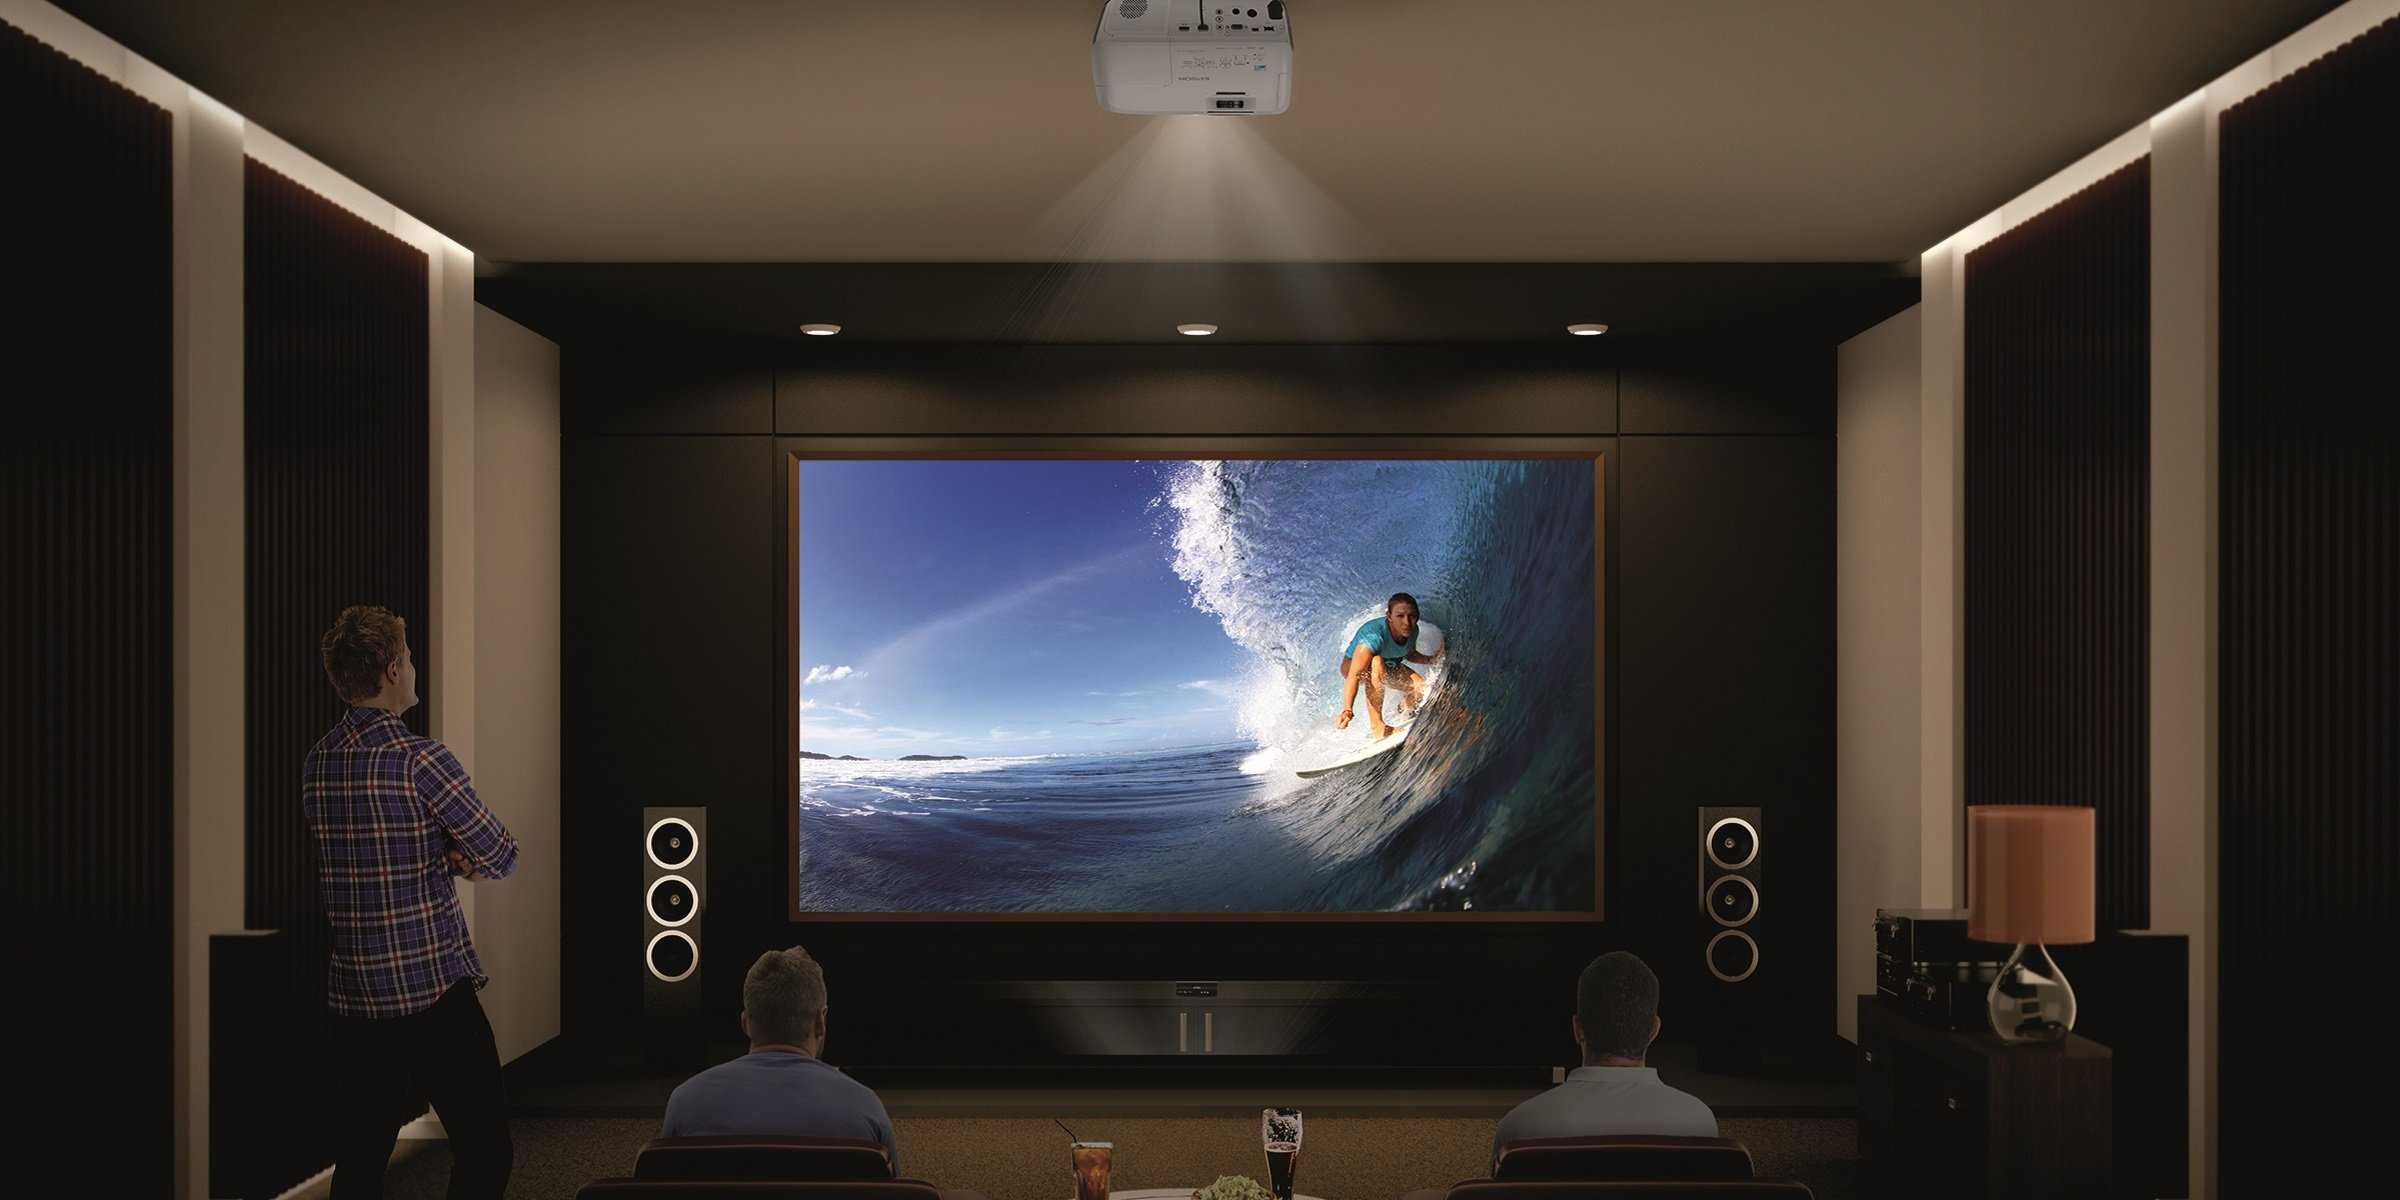 Проектор или телевизор: выбираем технику с умом. главные преимущества и недостатки, особенности и отличия, советы для покупателей